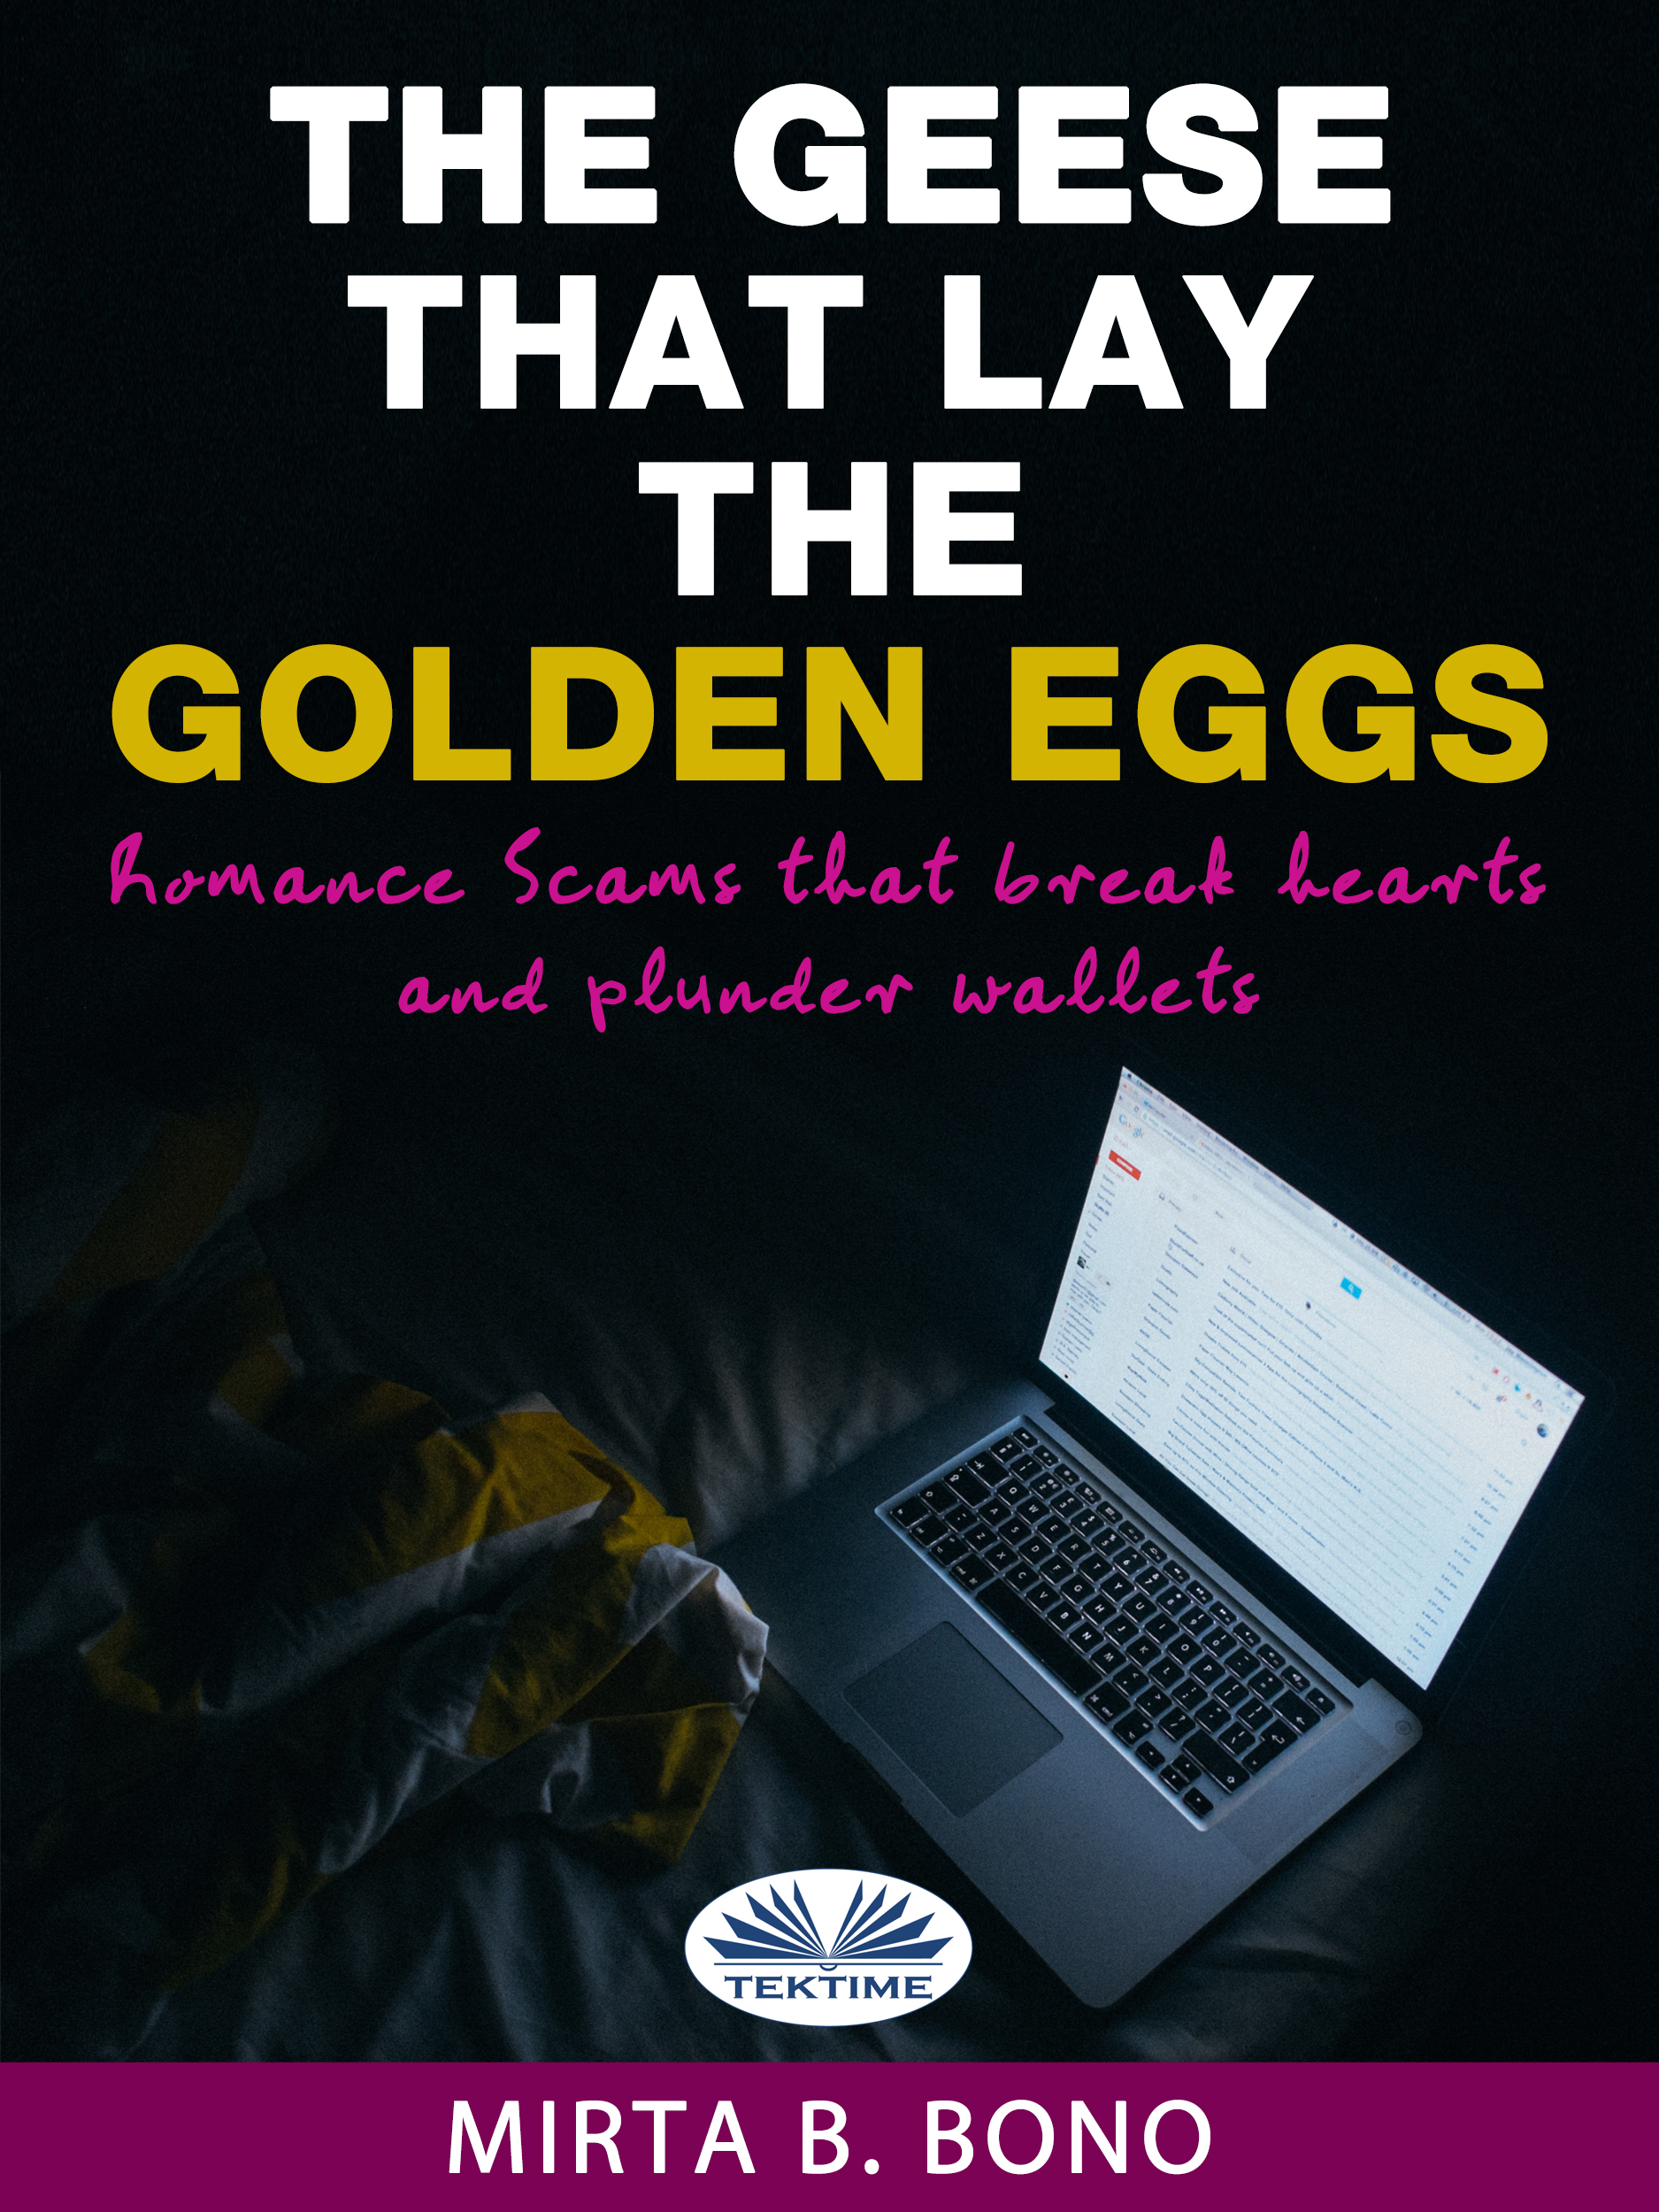 Книга The Geese That Lay The Golden Eggs из серии , созданная Nicola Maria Vitola, может относится к жанру Личностный рост, Зарубежная психология. Стоимость электронной книги The Geese That Lay The Golden Eggs с идентификатором 40851549 составляет 909.35 руб.